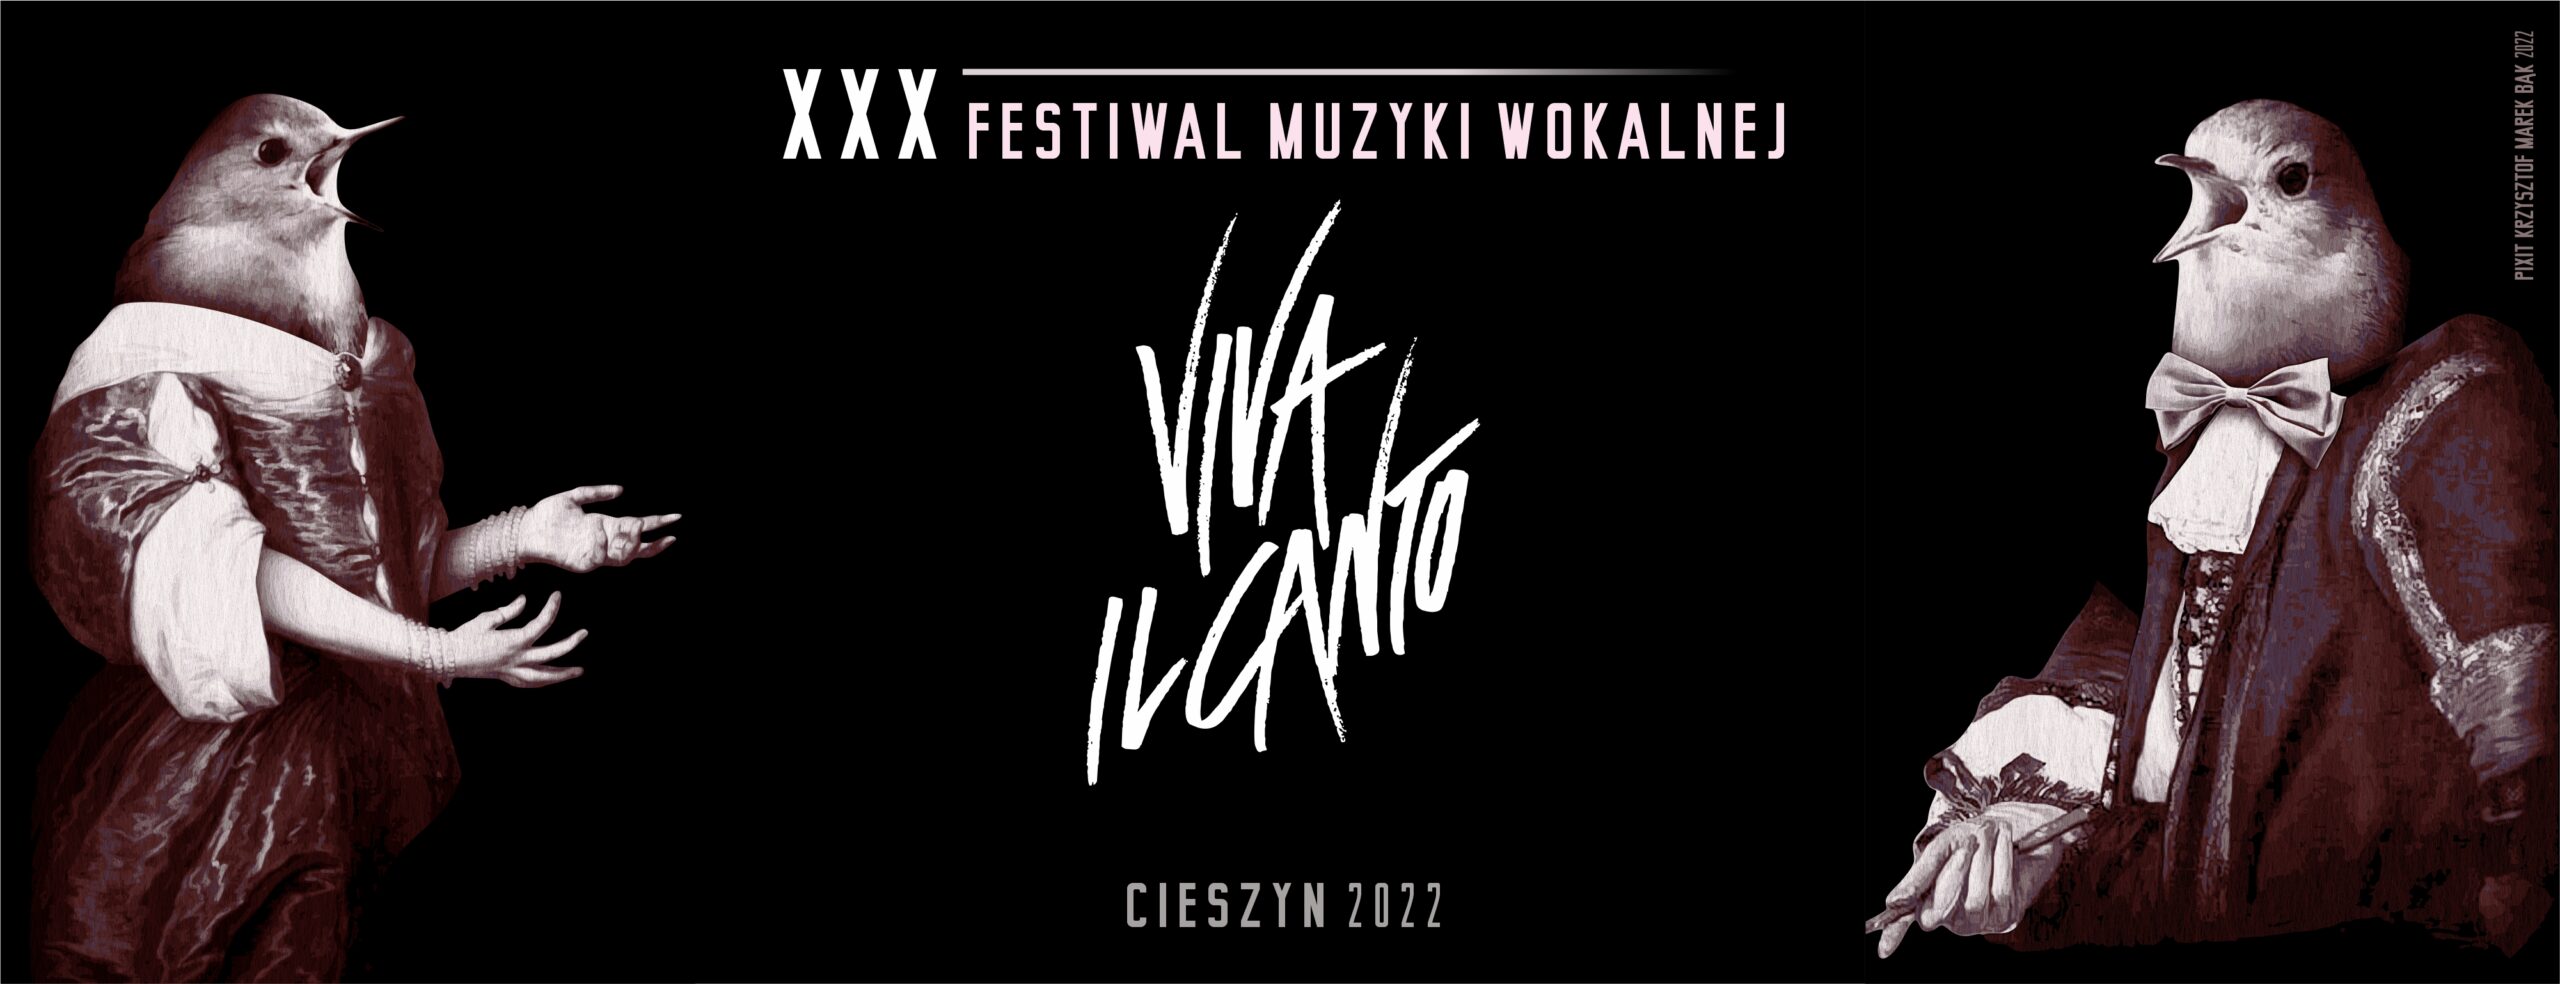 Baner XXX festiwalu muzyki wokalnej „Viva il canto”